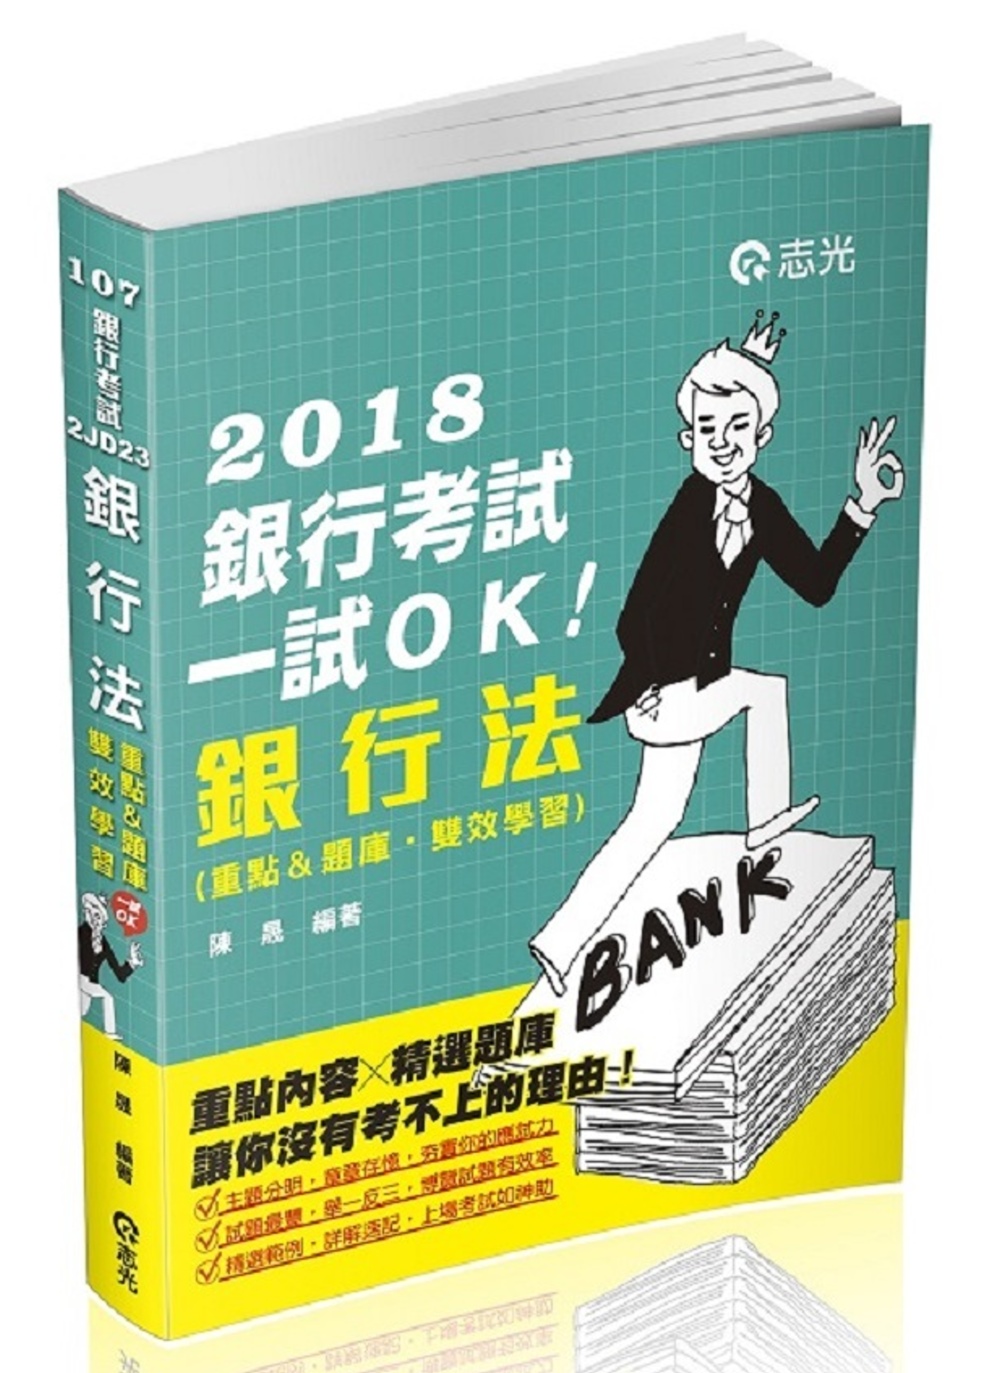 銀行法(重點&題庫、雙效學習)(銀行考試適用)